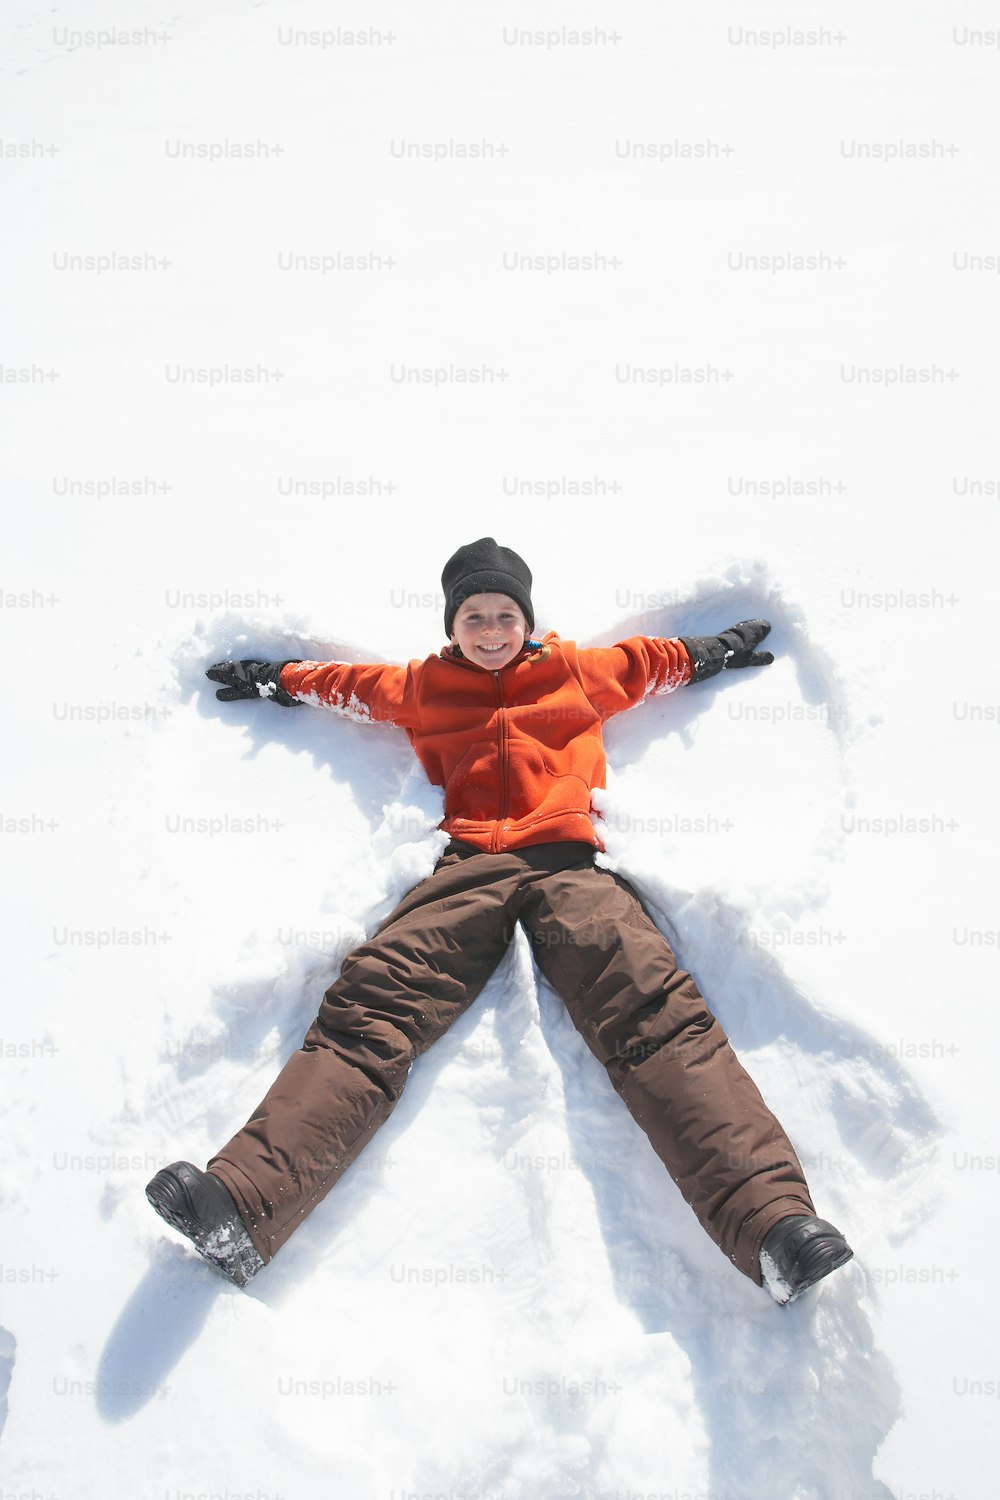 Una persona acostada en la nieve boca arriba